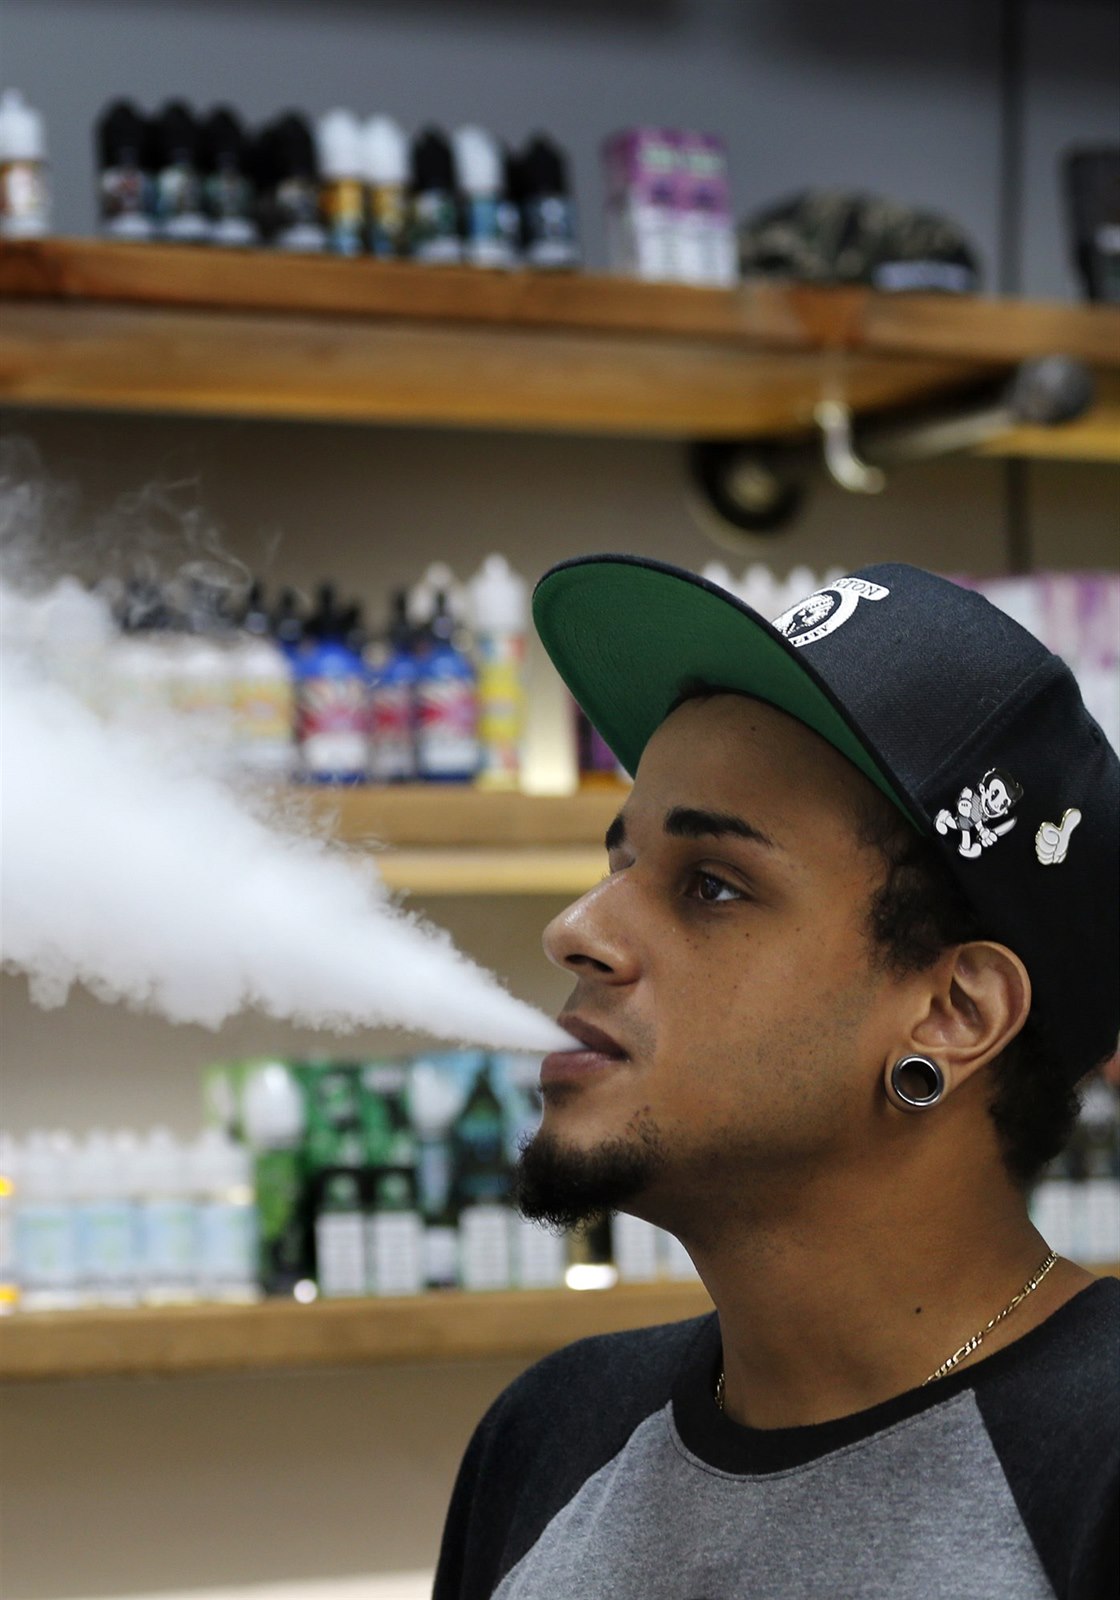 V USA bude zakázán prodej e-cigaret s příchutěmi. Amerika chce ochránit  zdraví teenagerů | Zdraví | Lidovky.cz